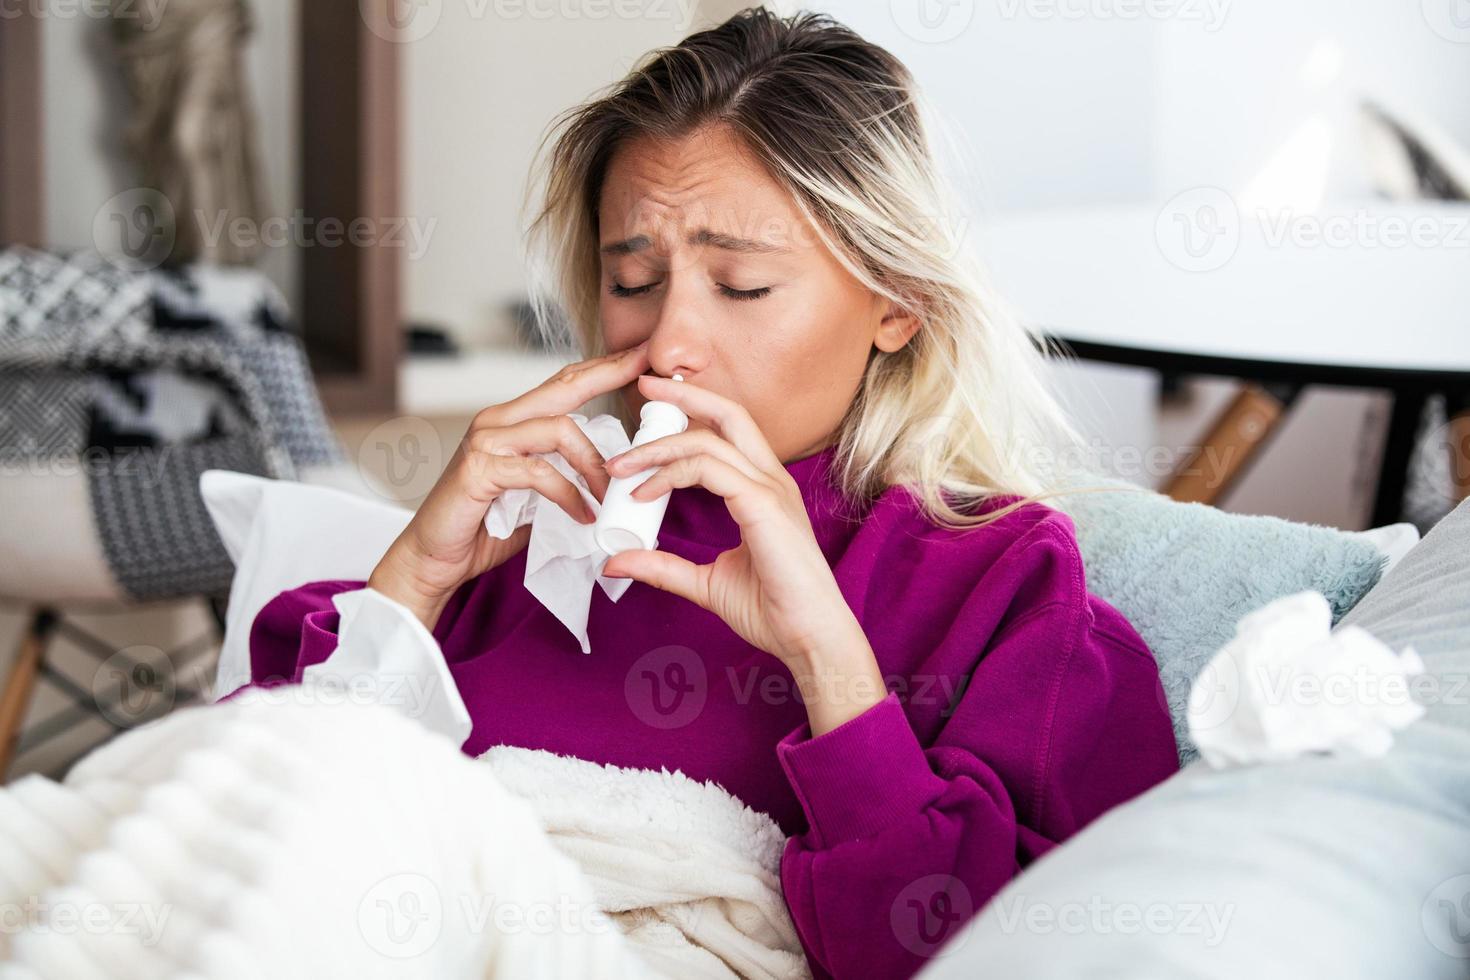 vrouw is hebben griep en ze is gebruik makend van nasaal verstuiven naar helpen haarzelf. vrouw gebruik makend van nasaal spuiten. nasaal verstuiven naar helpen een koud. ziek met een rhinitis vrouw druipend neus. vrouw is van toepassing nasaal verstuiven foto